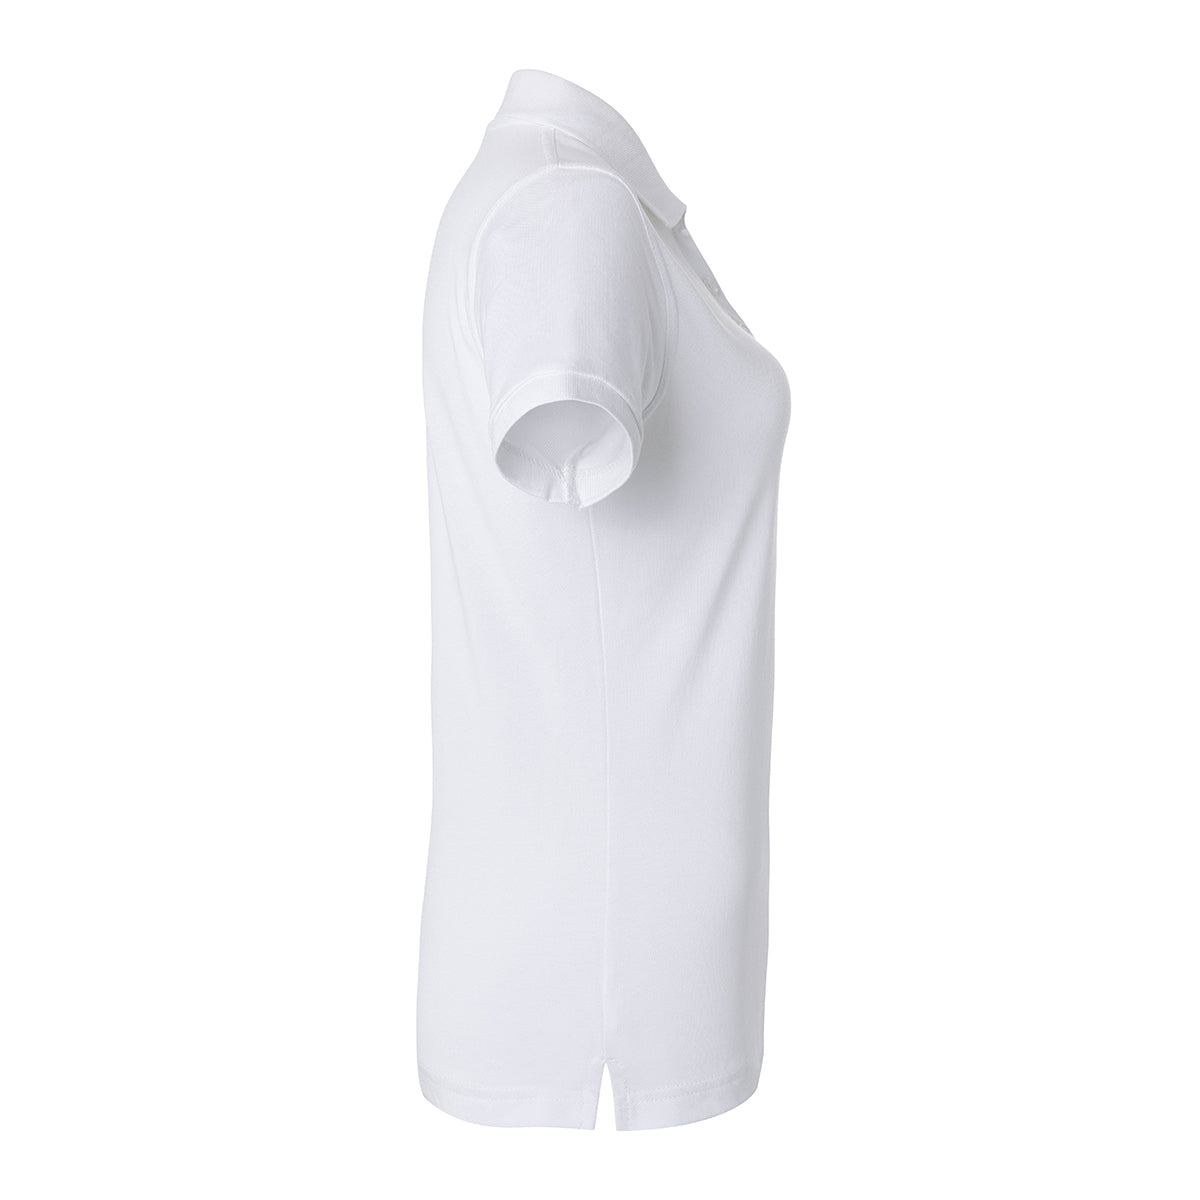 Karlowsky - Arbejdsbeklædning Basic Poloshirt til damer - Hvid - Størrelse: 2XL